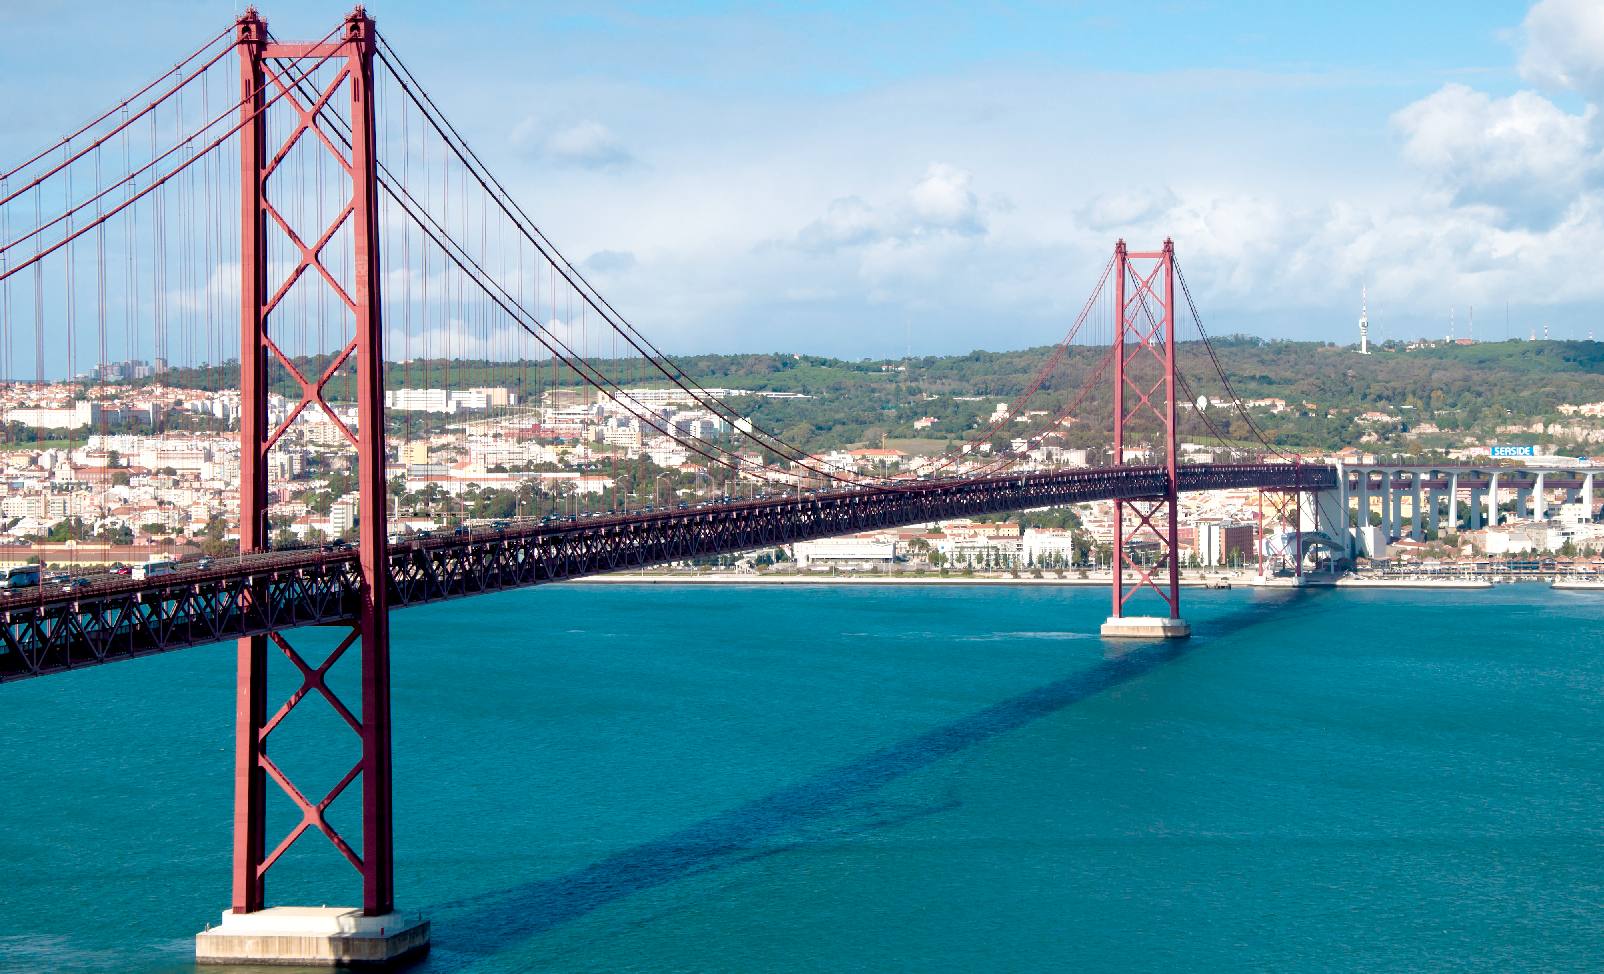 Steel suspension bridge in Portugal